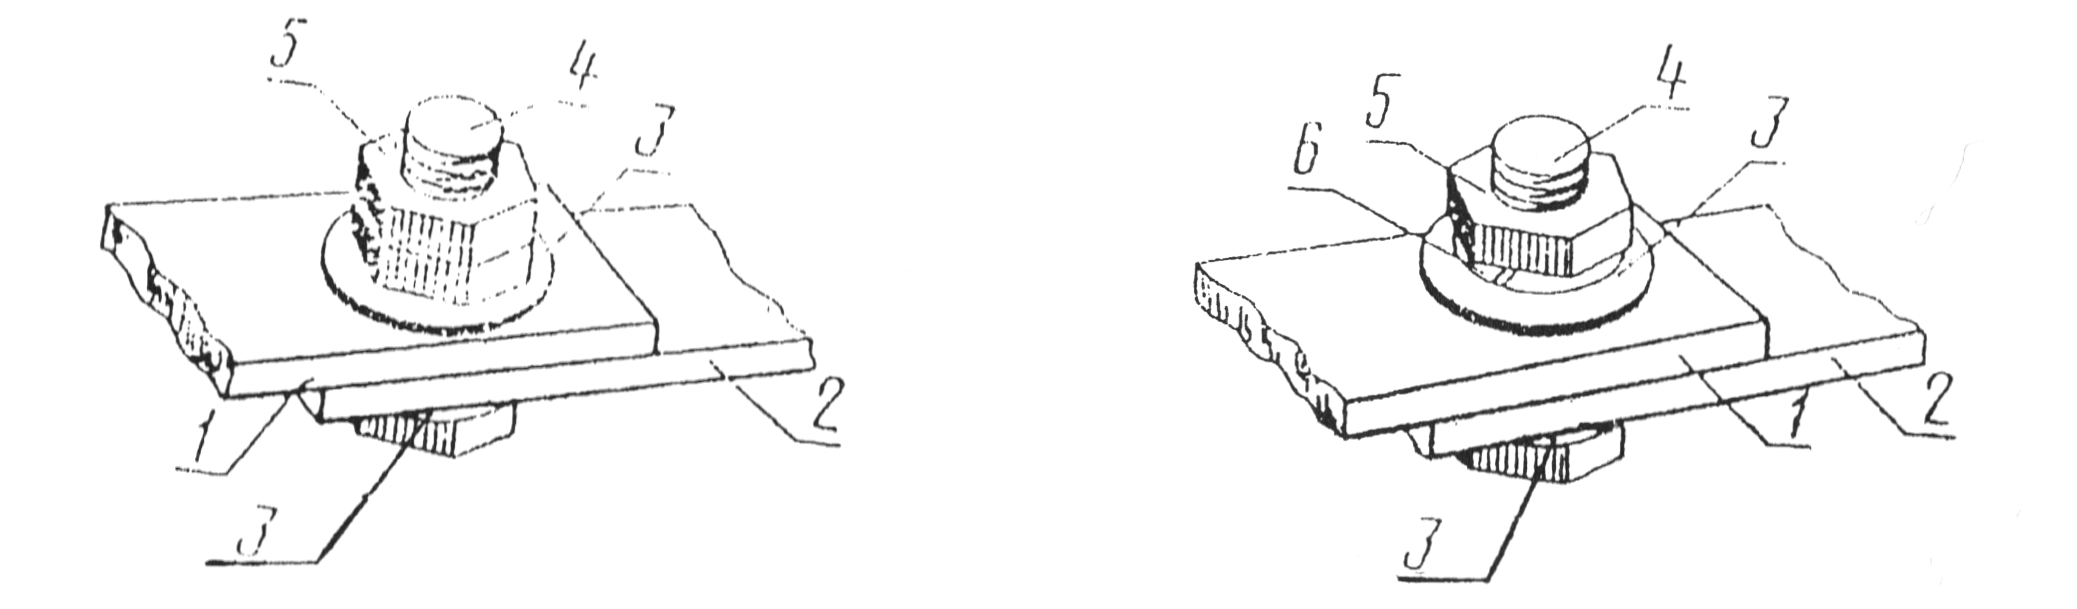 Разборные соединения проводников с плоскими контактными поверхностями со средствами стабилизации - с контргайкой (слева) и с пружинной шайбой (справа)